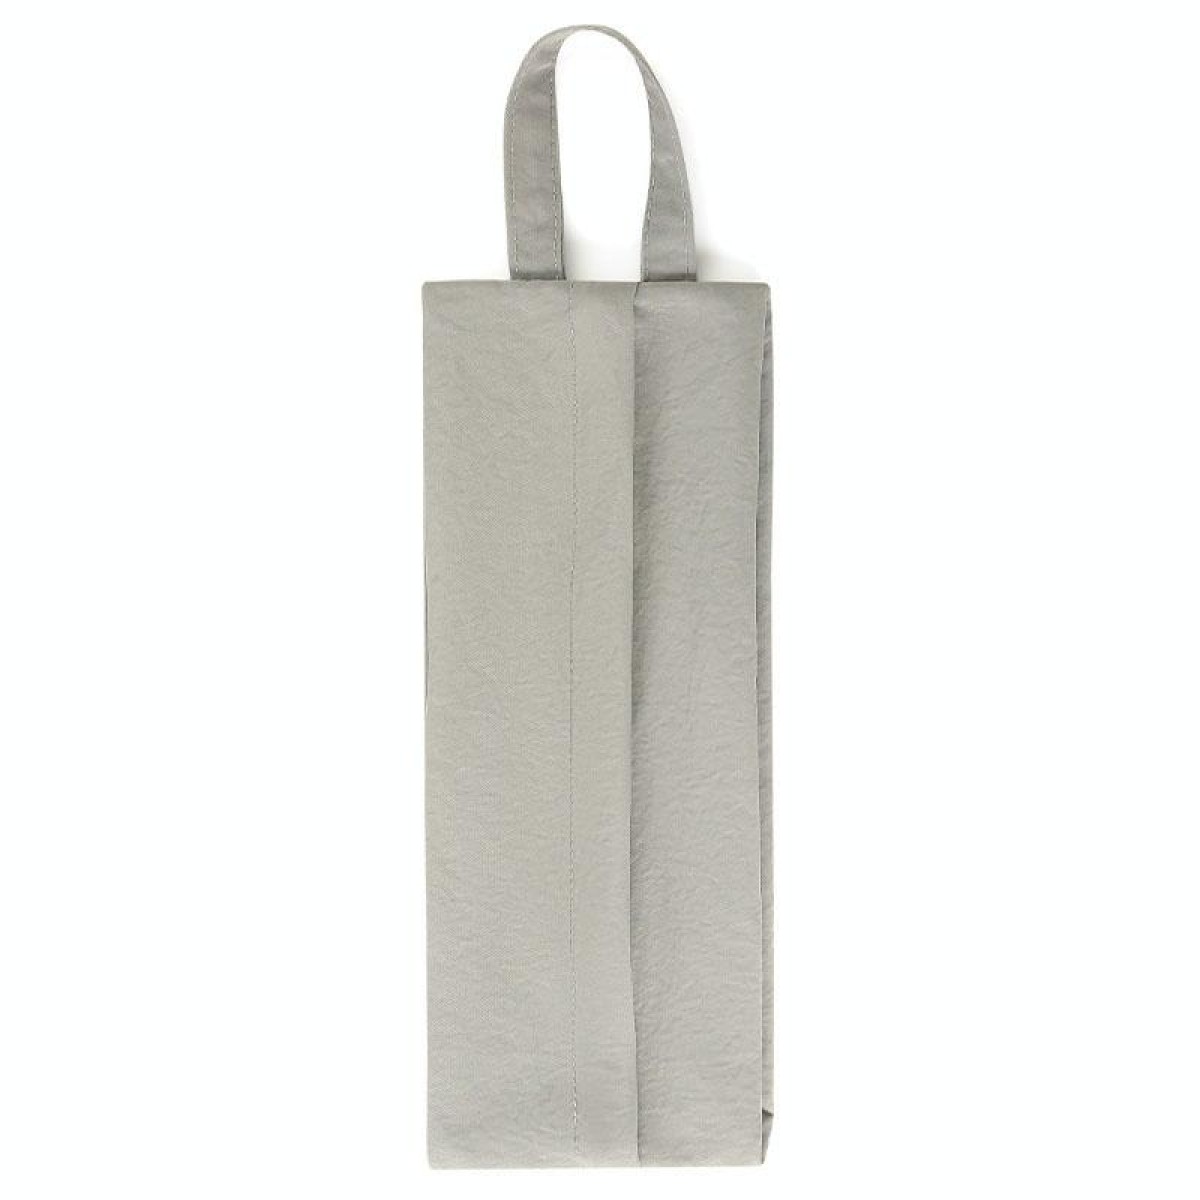 Waterproof Portable Travel Underwear Socks Storage Bag Handheld Luggage Organization Bag(Grey)